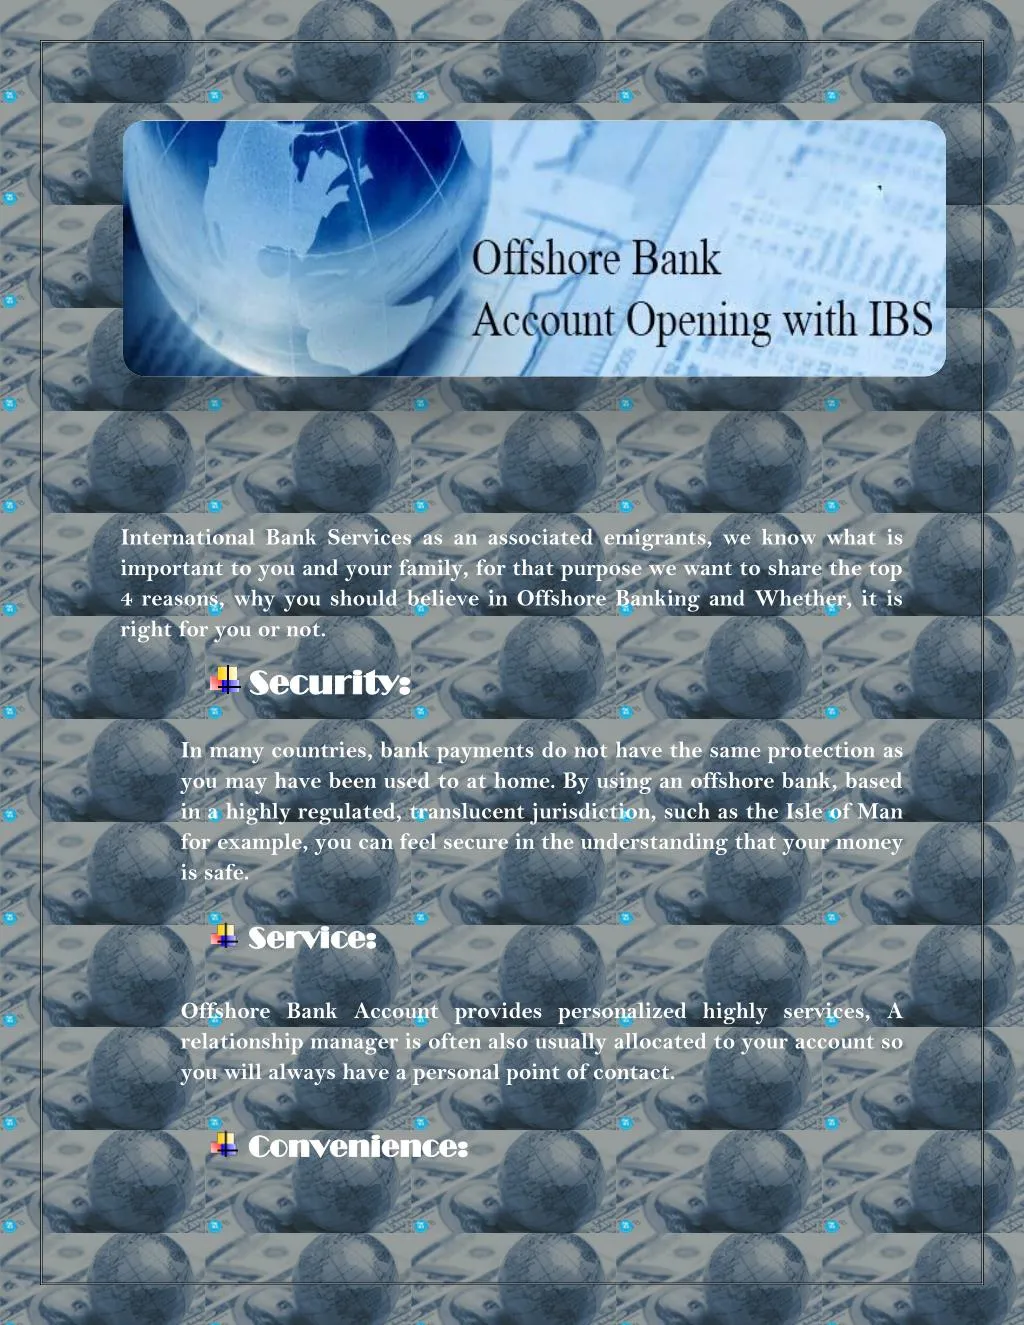 international bank services as an associated